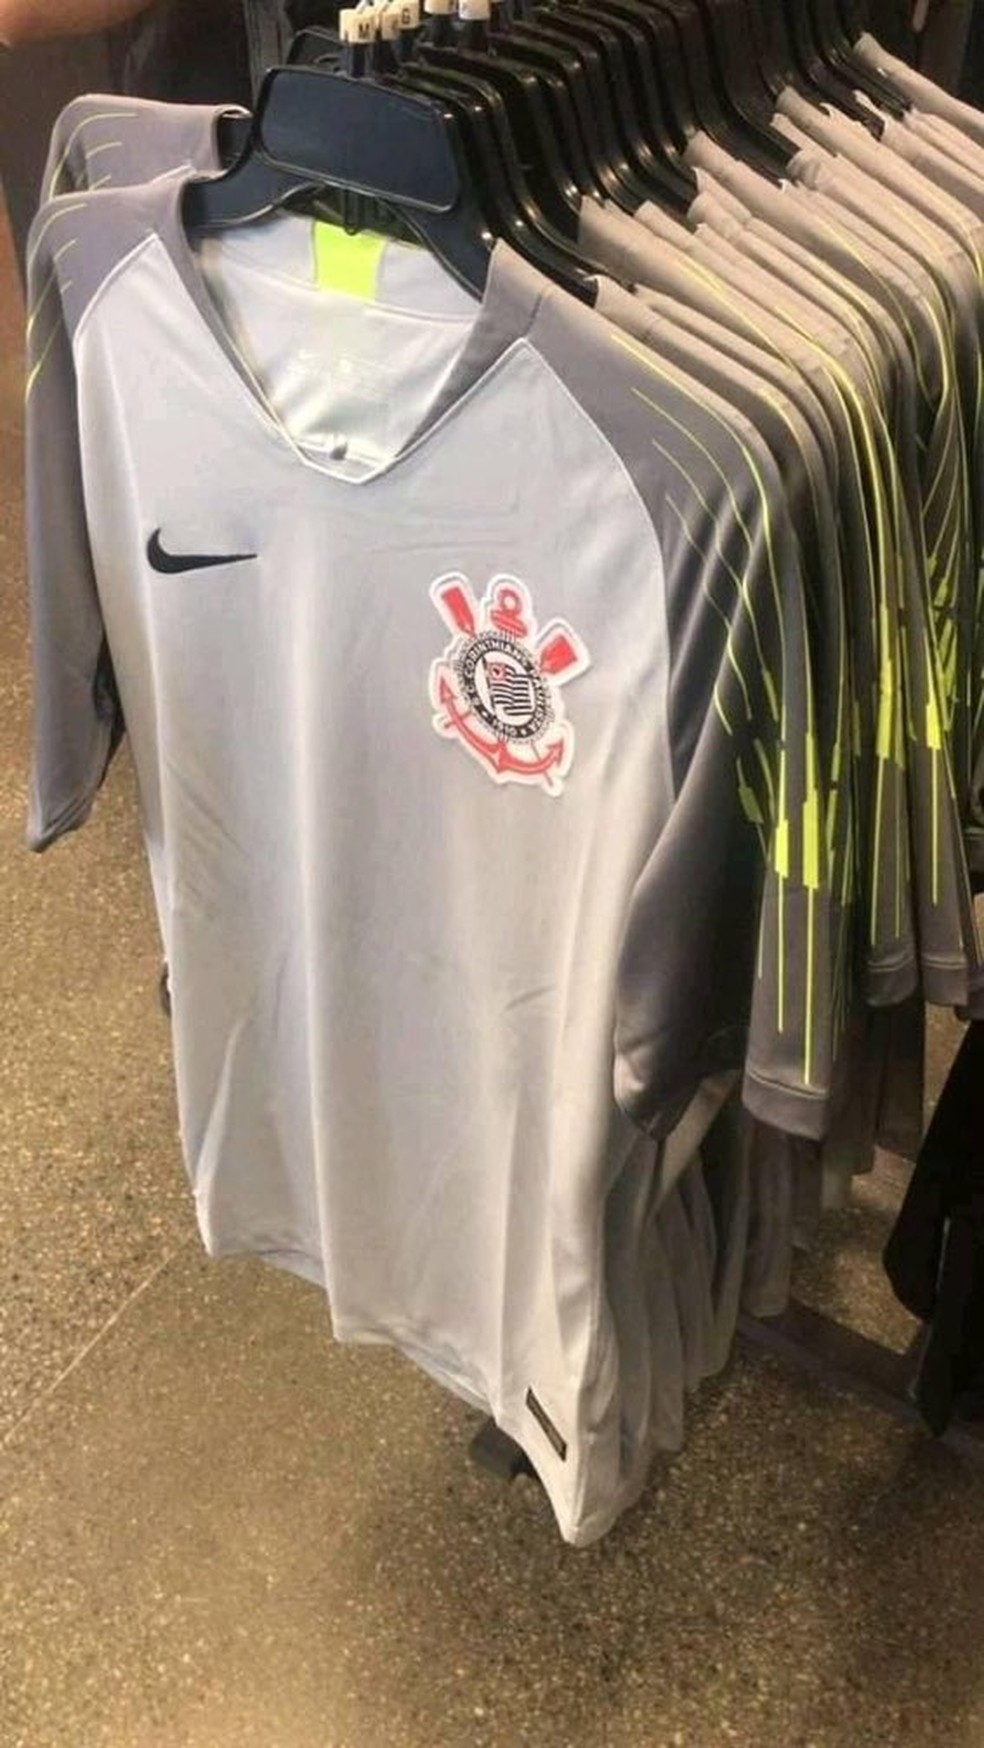 Terceira camisa de goleiro do Corinthians com detalhes verdes causou polêmica — Foto: Reprodução do Twitter